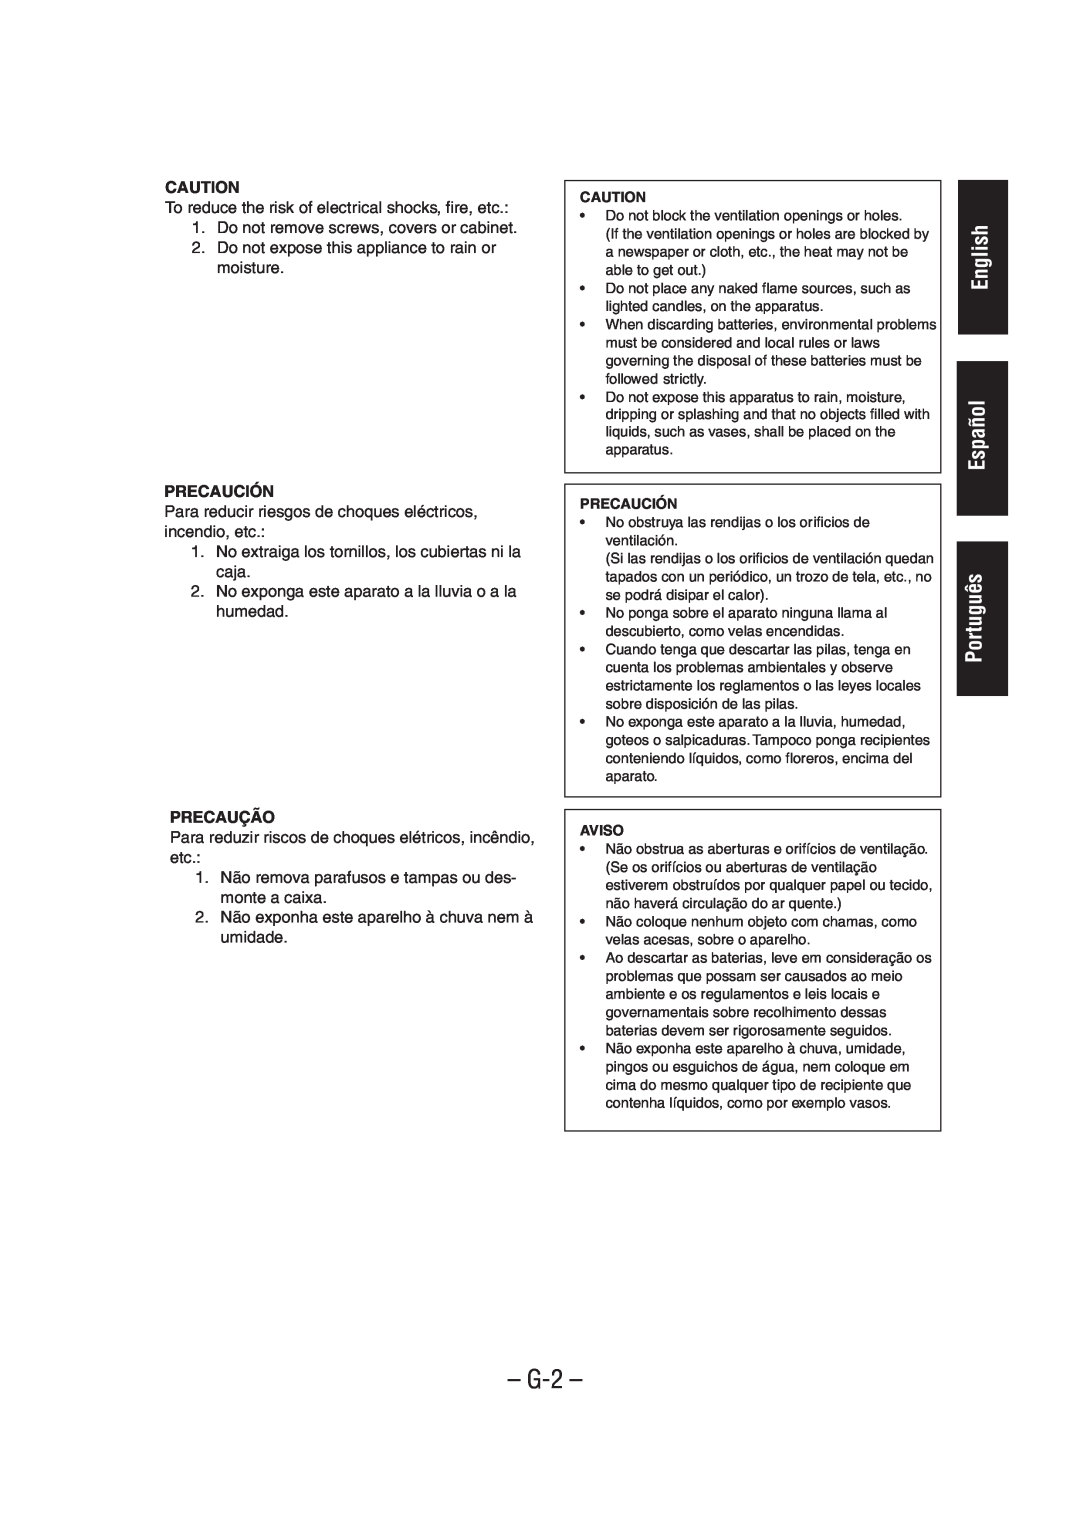 JVC UX-A52 manual English Español Português, Precaución, Precaução, G-2 